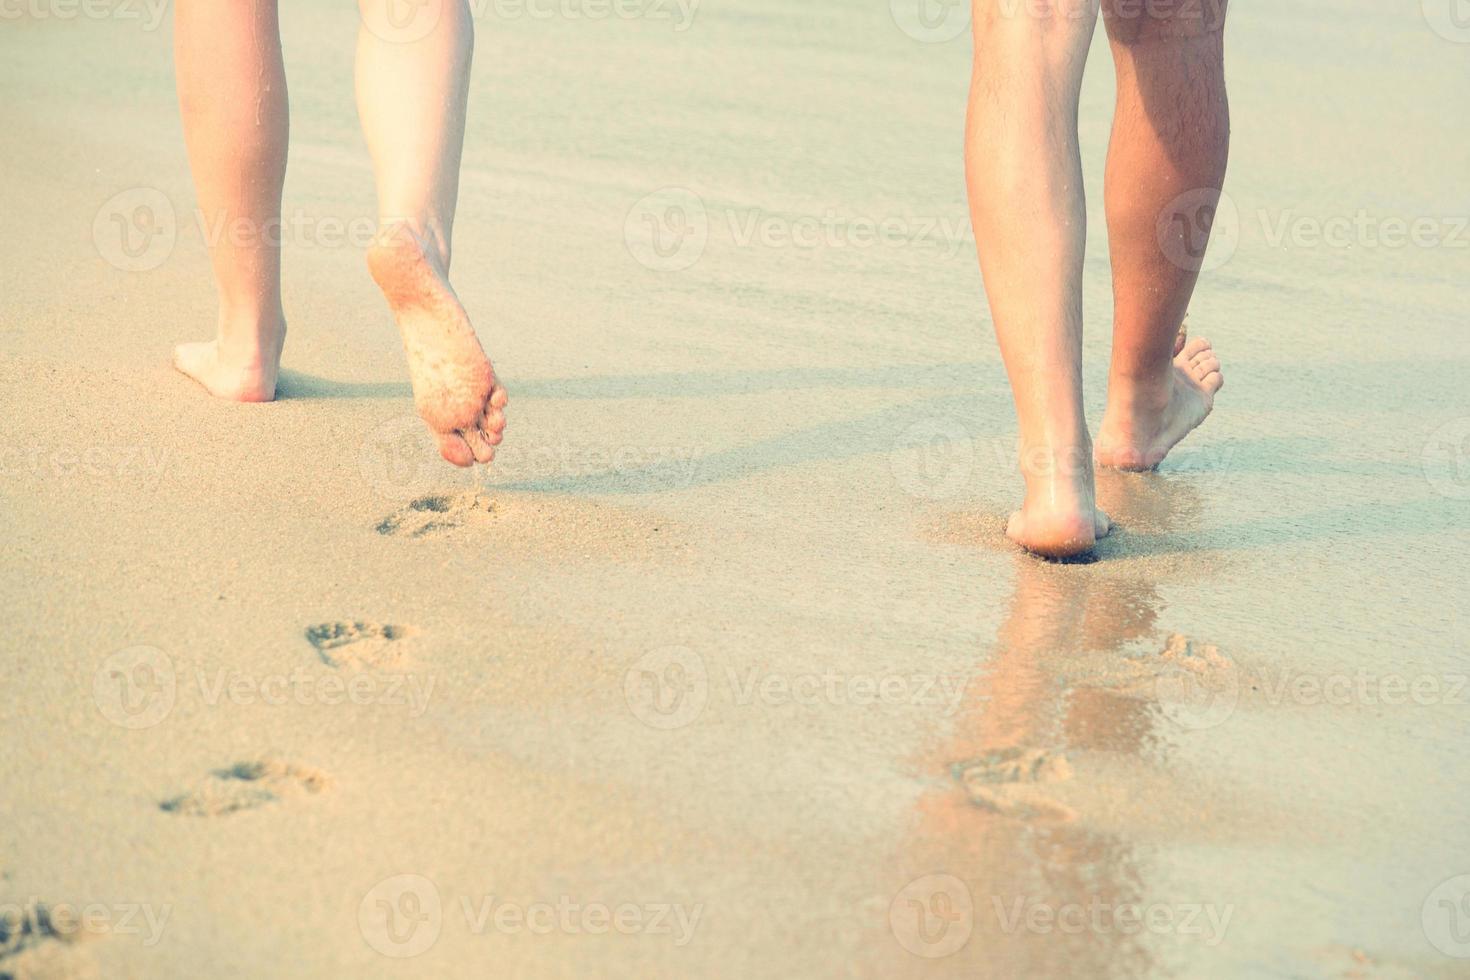 närbild av en dam kvinna och man par älskare barfota promenader och fotavtryck på våt på stranden romantisk smekmånad. semester på havsstranden, fot på havssand. skuggan från solen träffar sanden. resa foto